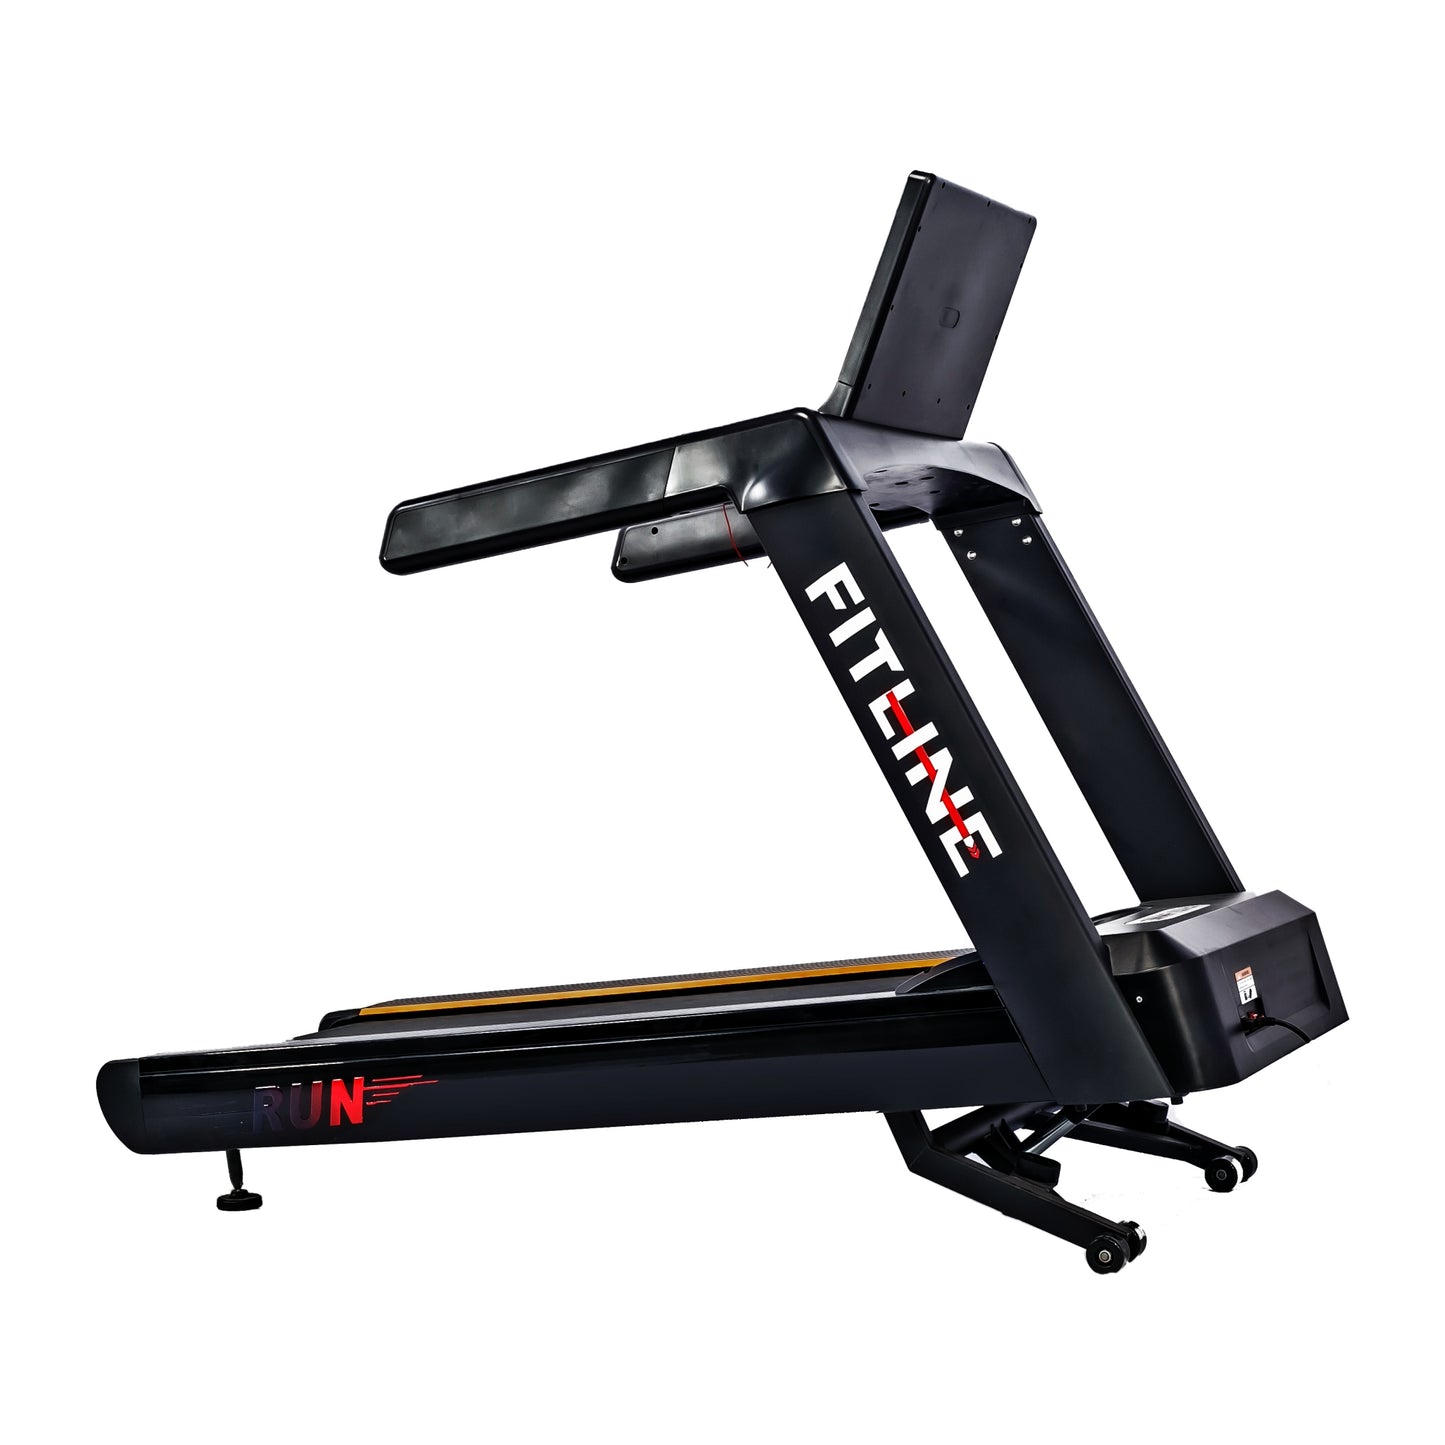 Run_Treadmill-Best Cardio Exercise Equipment